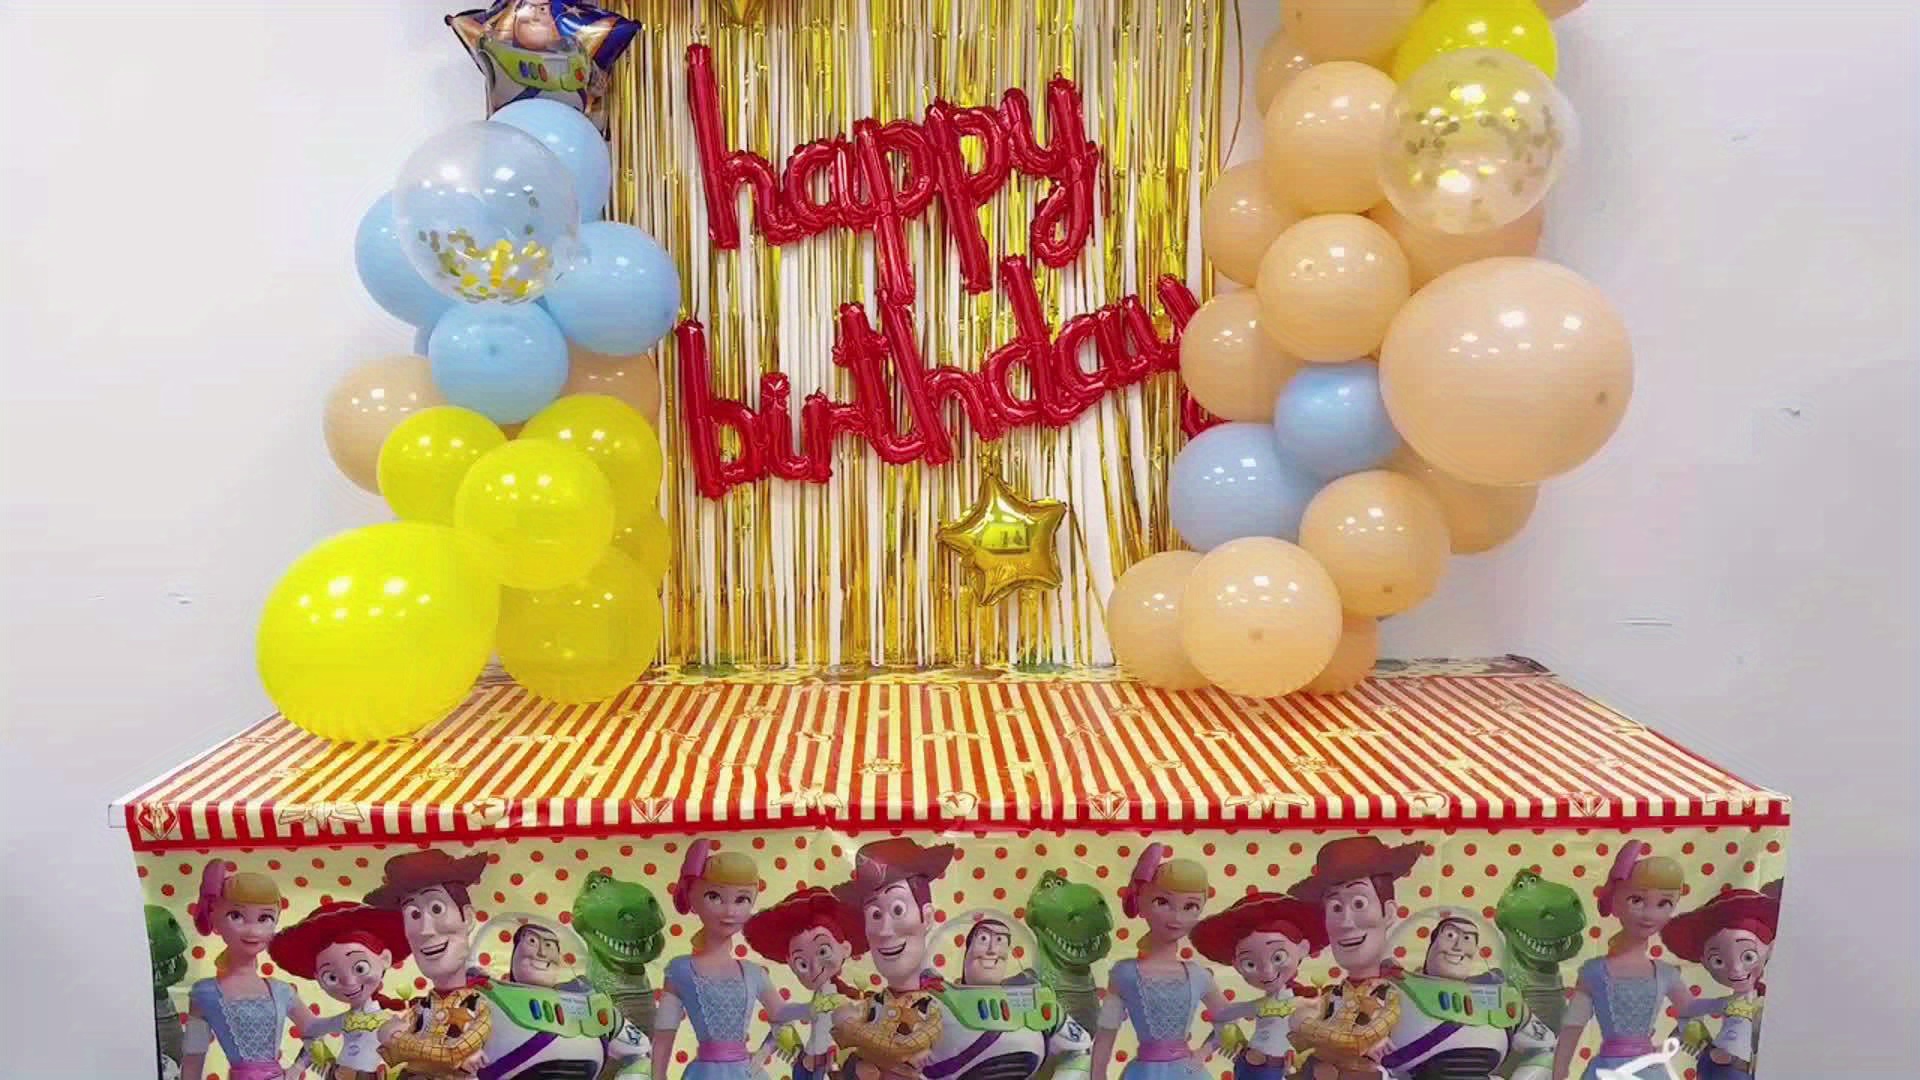 58 Pezzi Licenza Ufficiale Toy Story Balloon Arch Kit Set, Palloncini  Colorati Assortiti, Palloncini Colorati Feste Compleanno Baby Shower  Forniture Feste Nozze, Alta Qualità E Conveniente